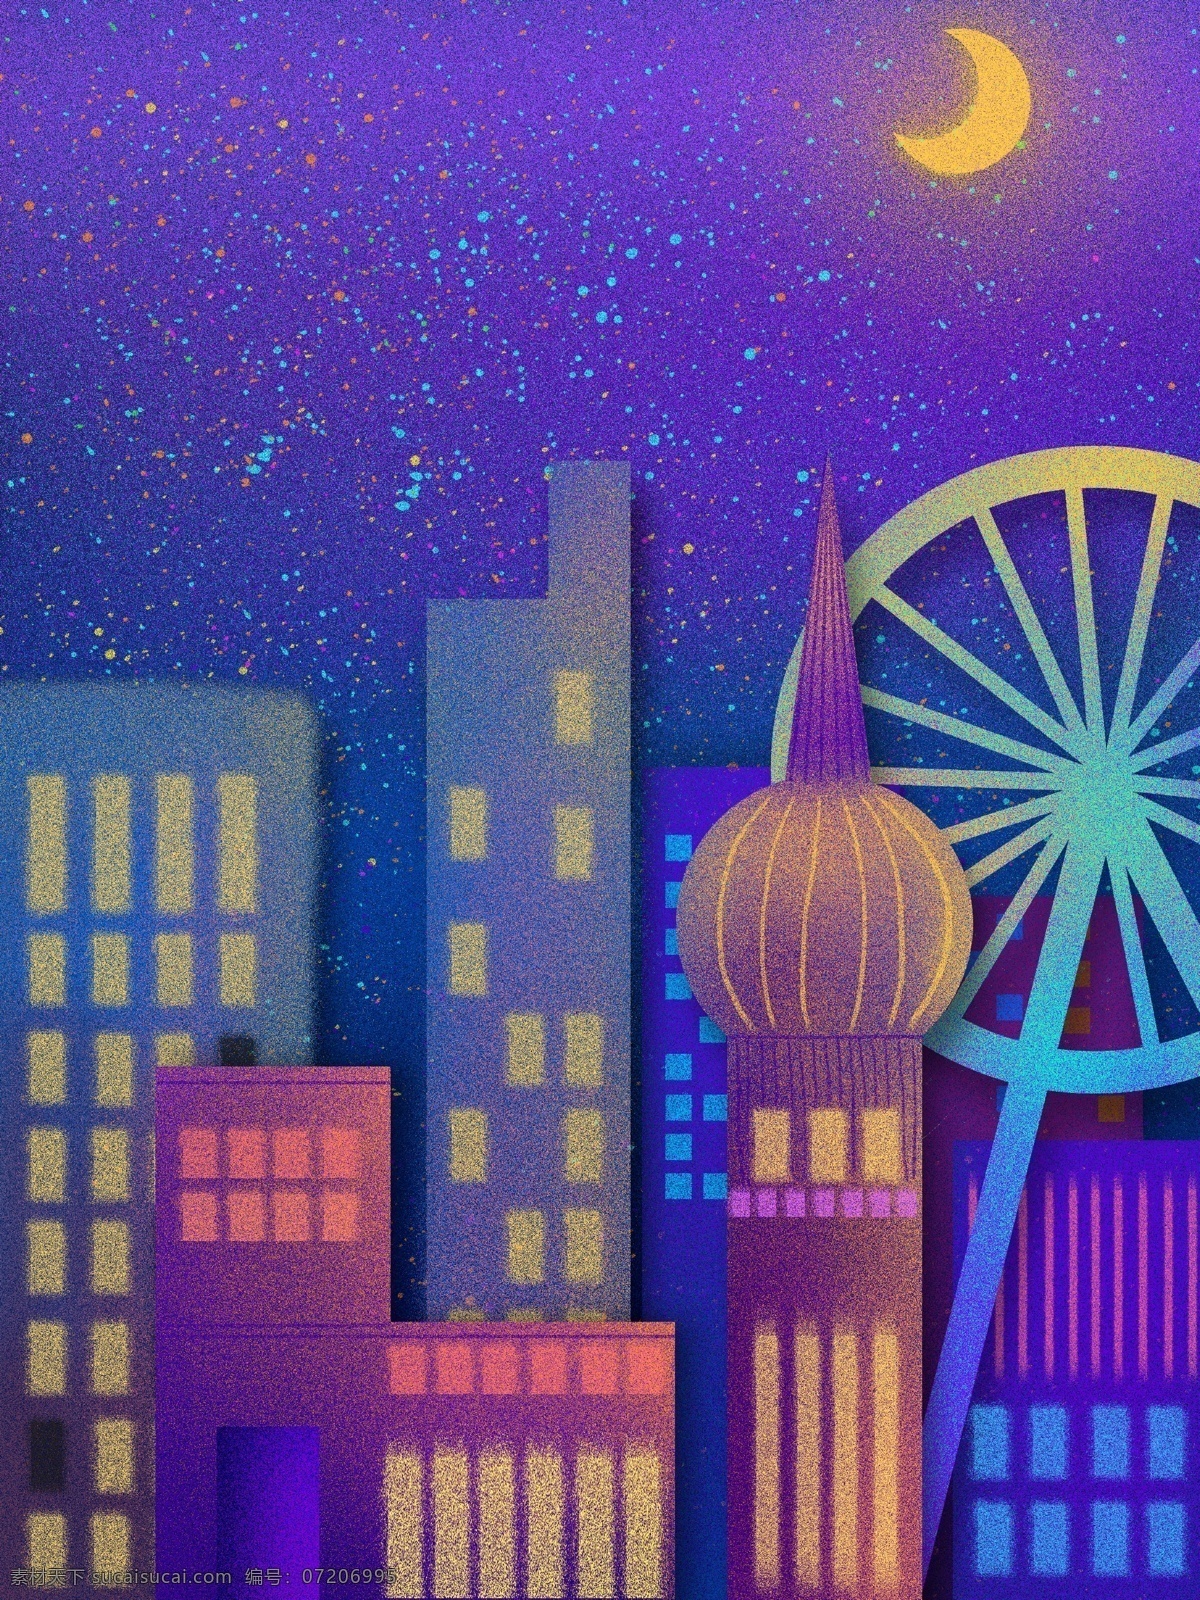 颗粒 感 肌理 城市 夜晚 剪影 插画 城市剪影 科技感 星空 壁纸 颗粒感 晚安你好 蓝色系